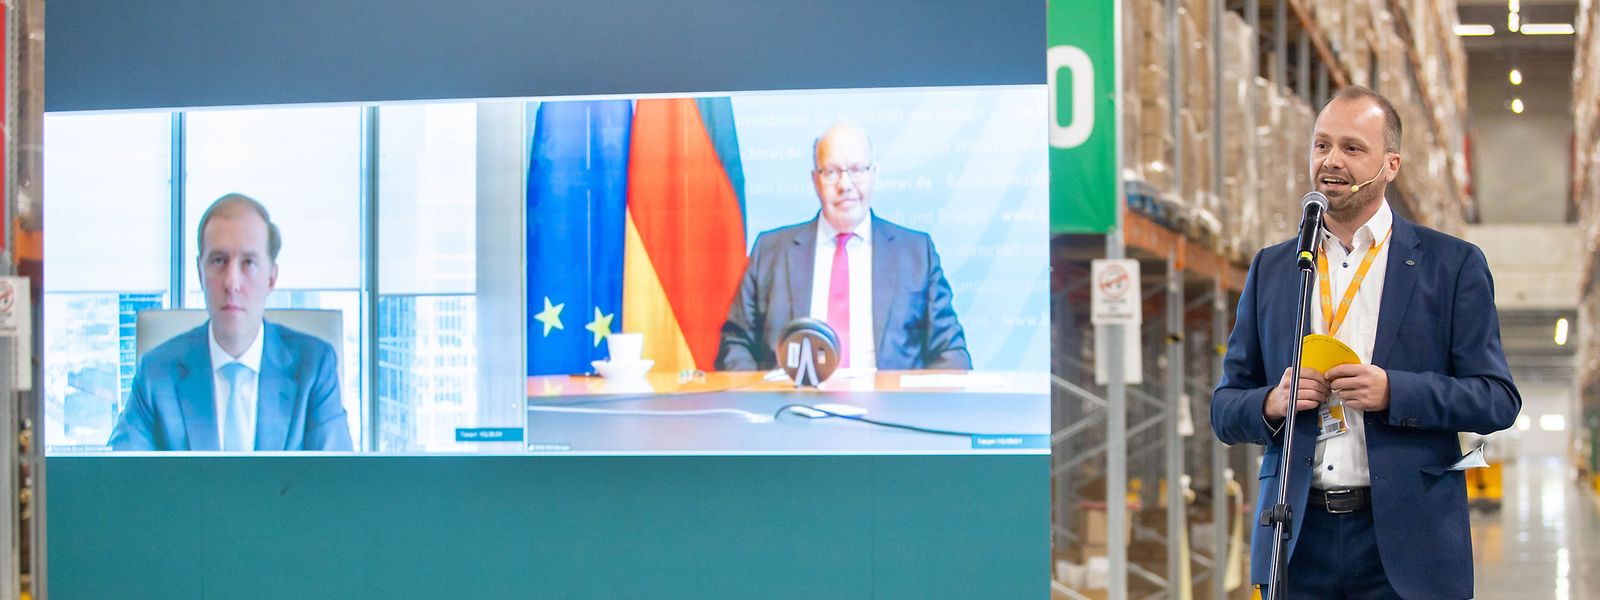 Bei der Einweihung des Globus-Logistikzentrums bei Moskau waren Bundeswirtschaftsminister Peter Altmaier und der russische Industrieminister Denis Manturow virtuell zugeschaltet. 